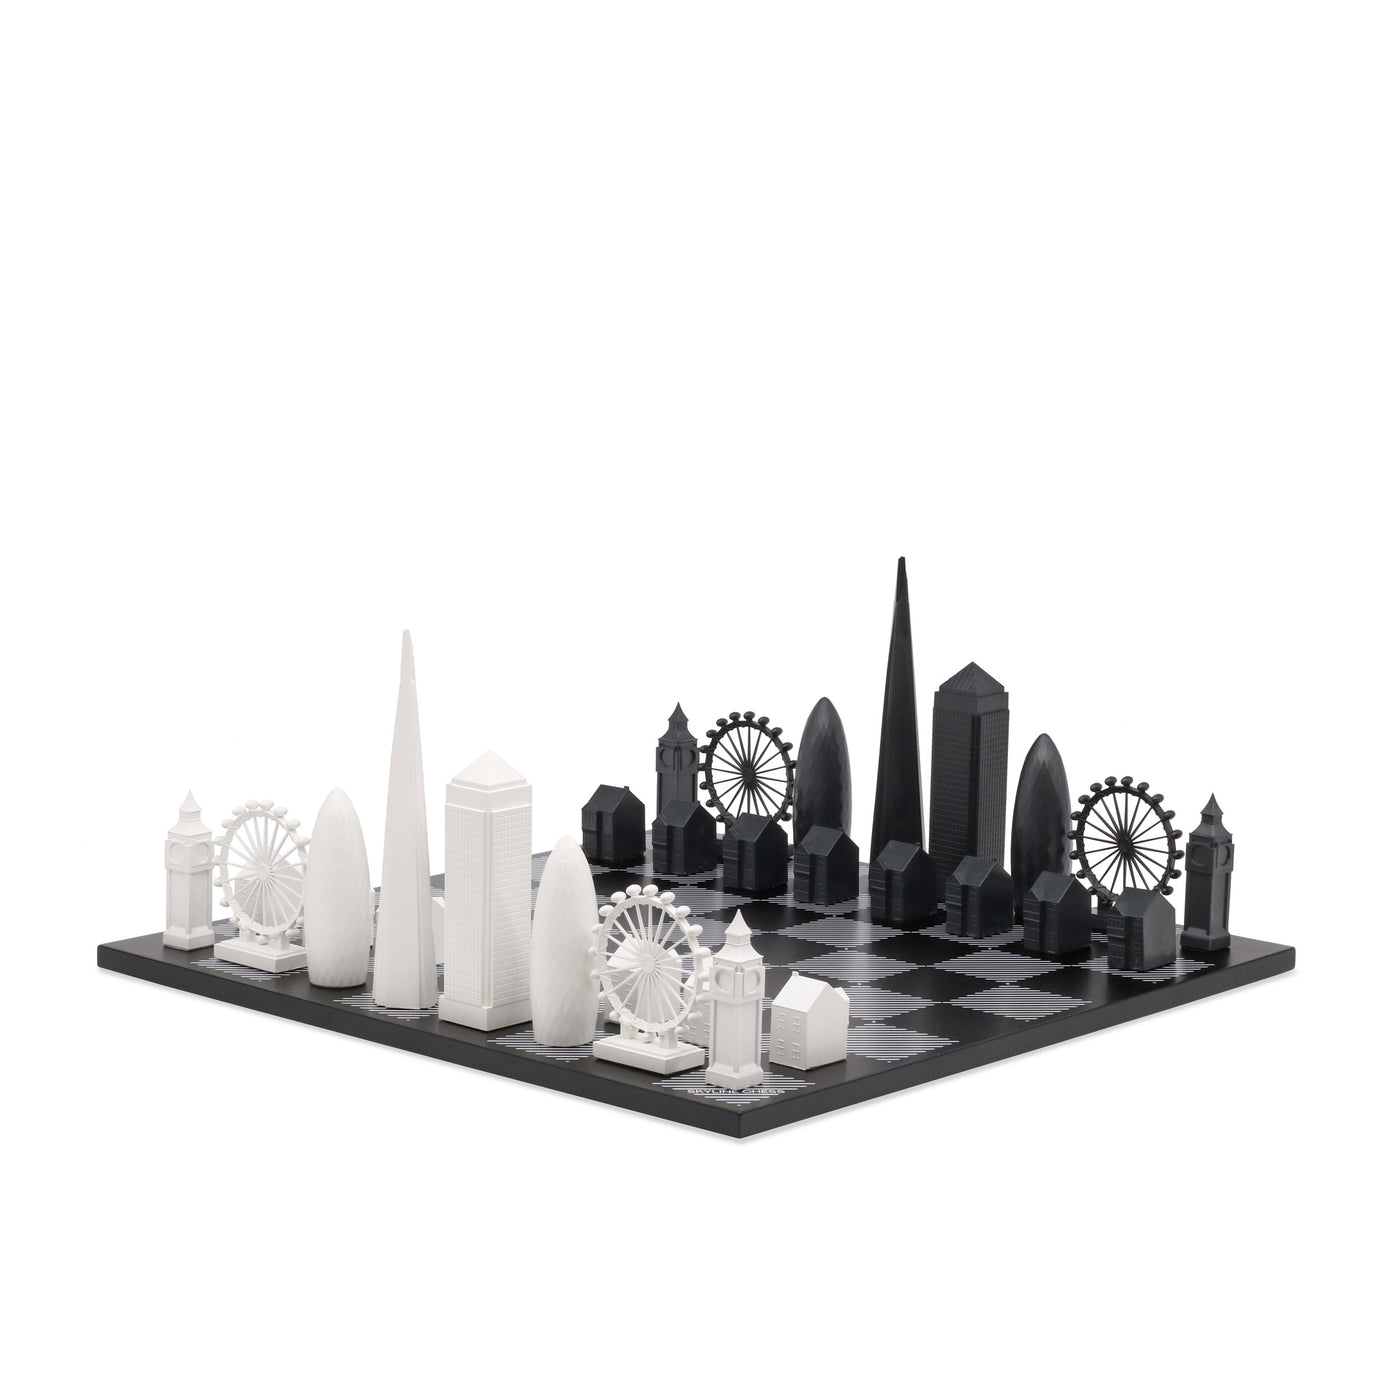 London unique luxury chess set of famous buildings